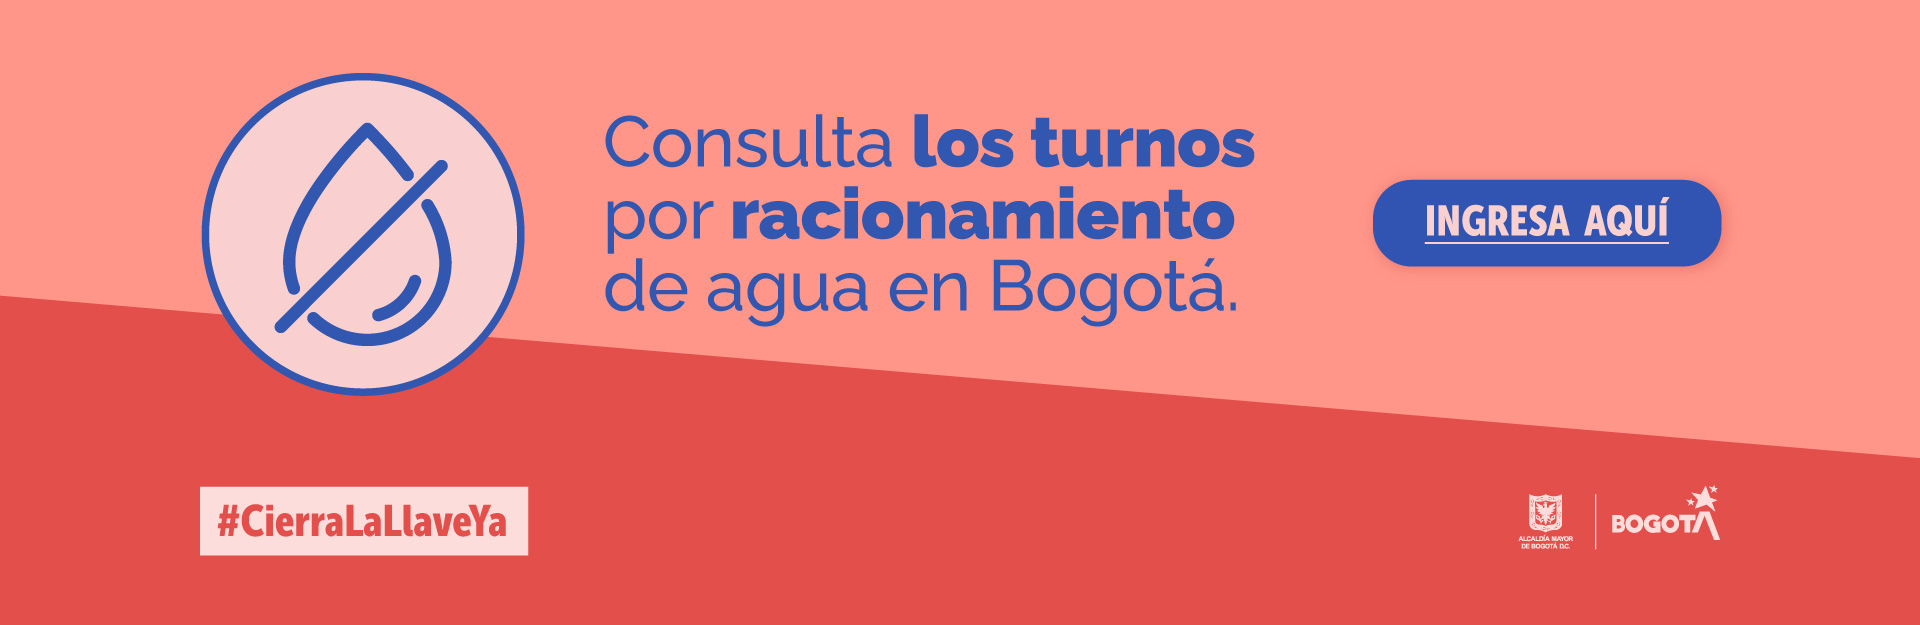 Consulta los turnos por racionamiento de agua en Bogotá